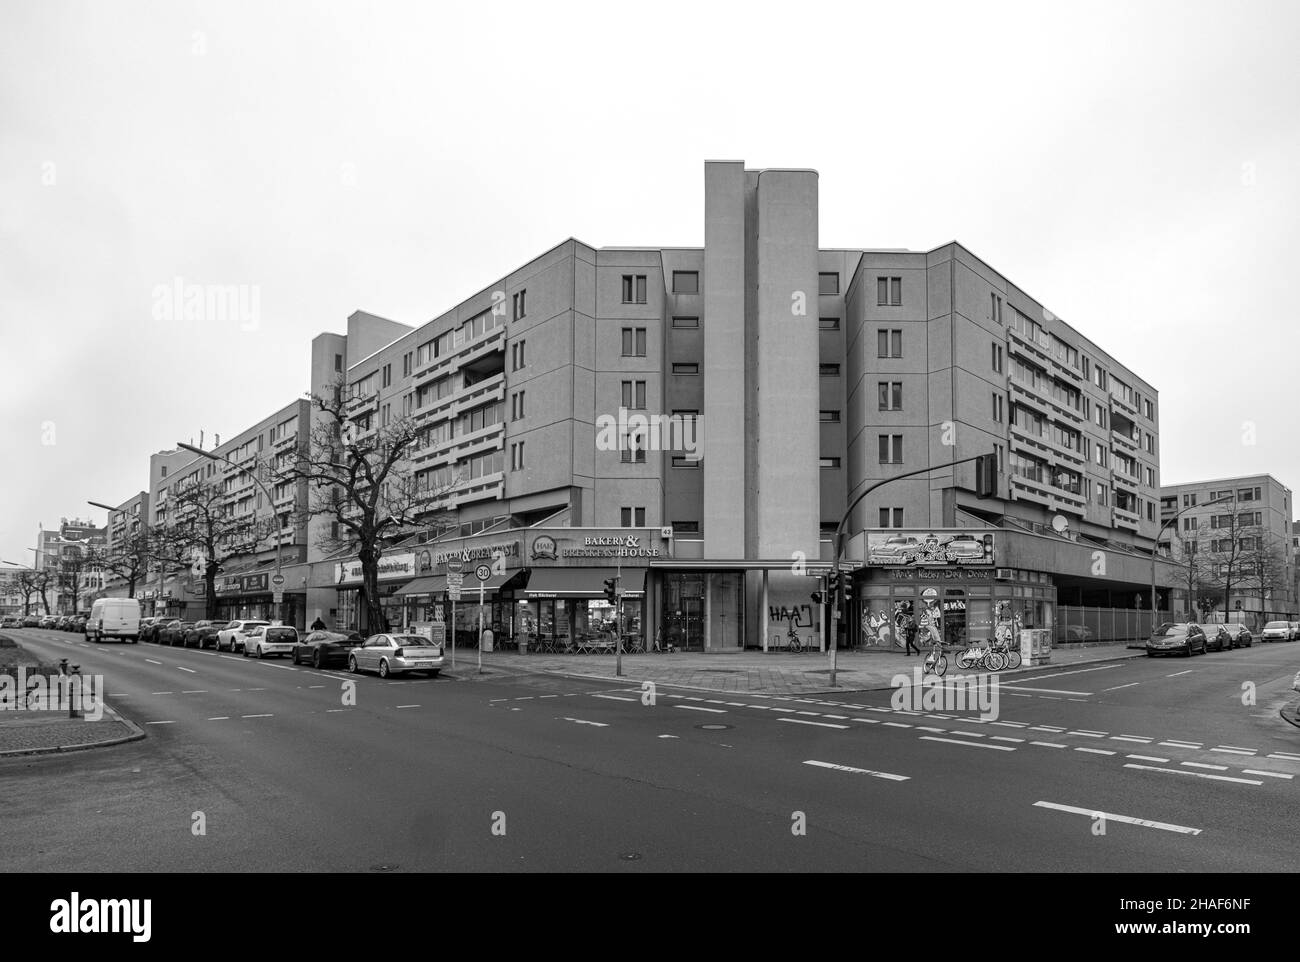 Schöneberger Terrassen, Berlin.Sozialer Wohnungsbau der 1970er Jahre Banque D'Images